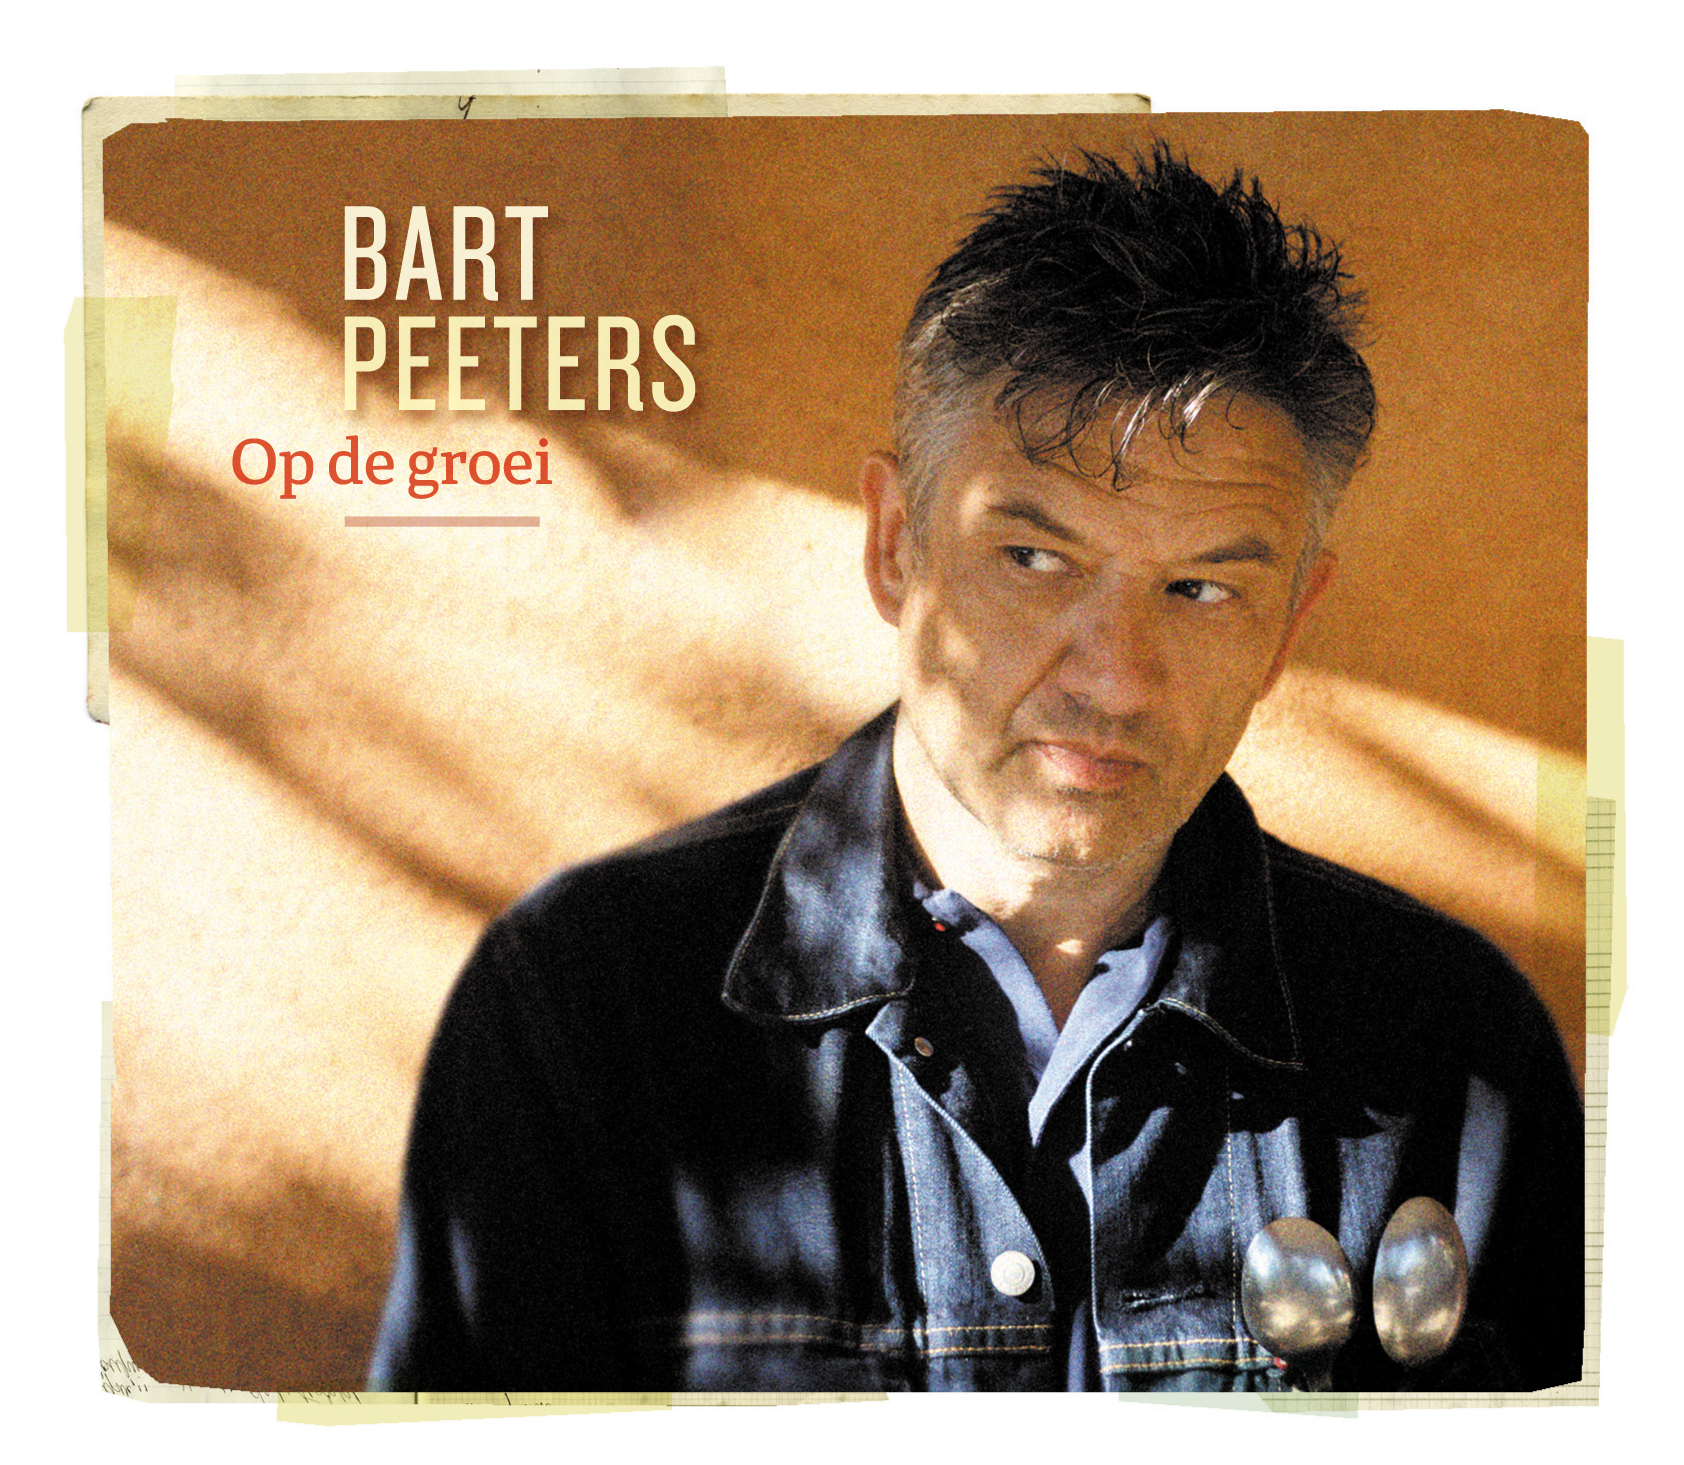 CD: Bart Peeters - Op de groei (***) - Gazet van Antwerpen